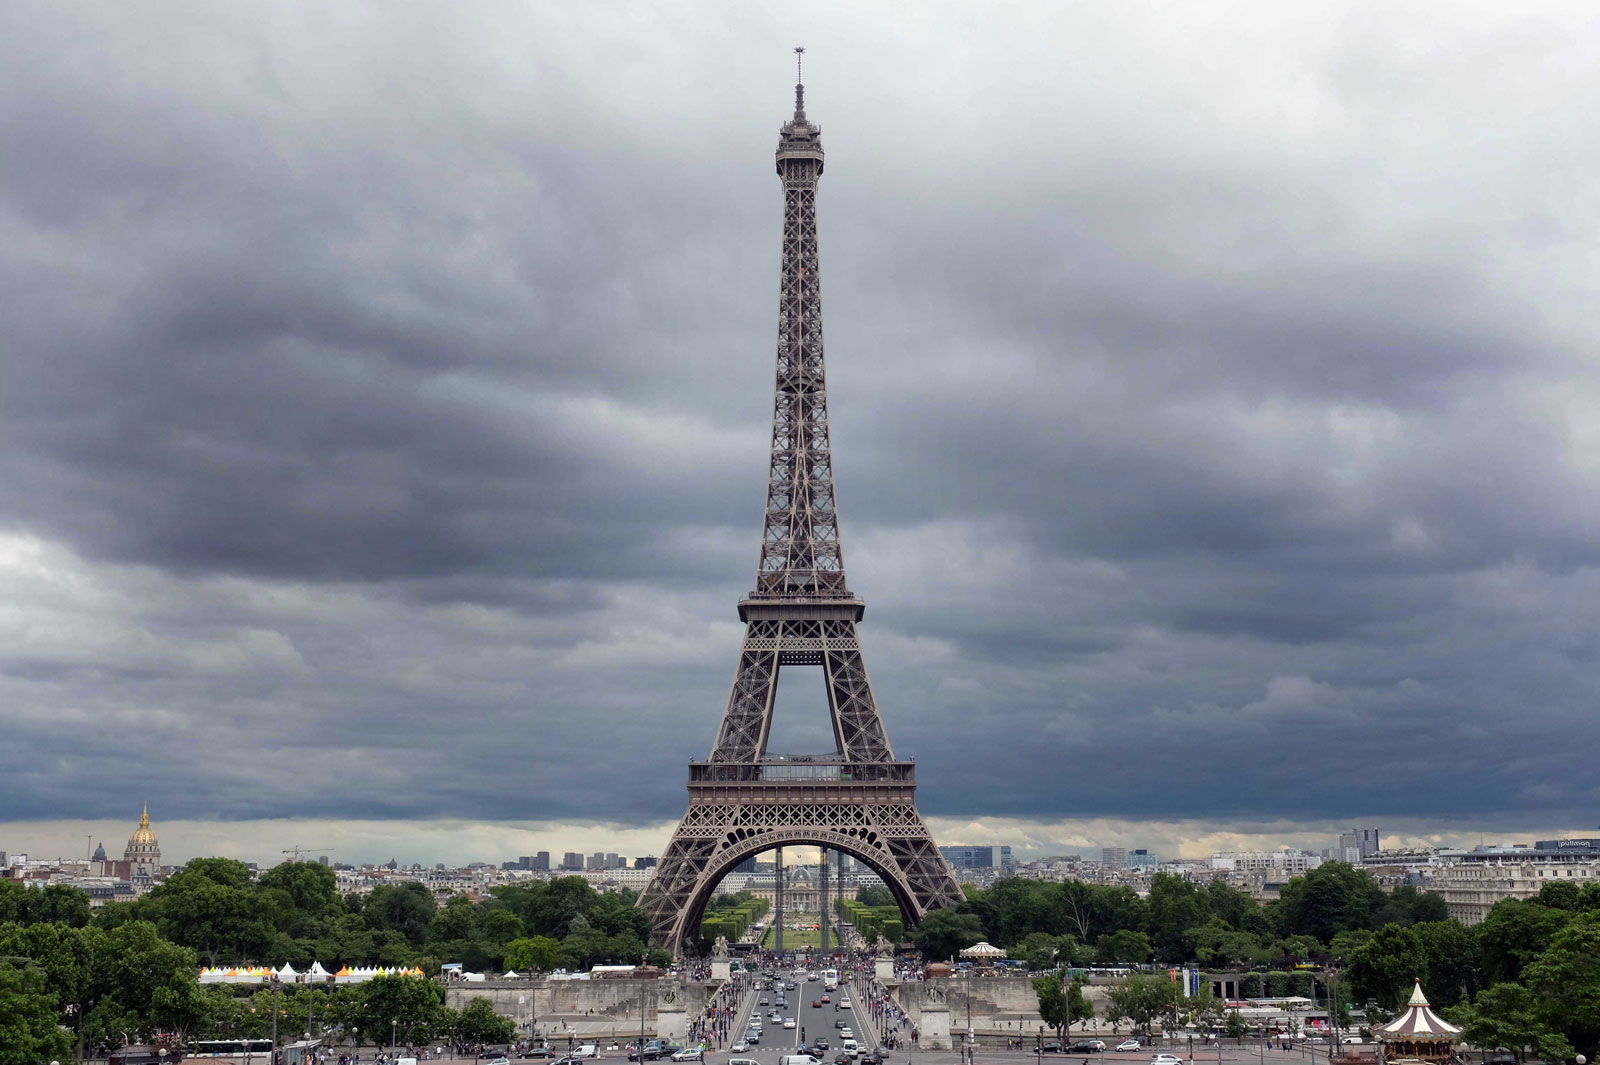 [reportage] / #parigisecondostefanoceretti